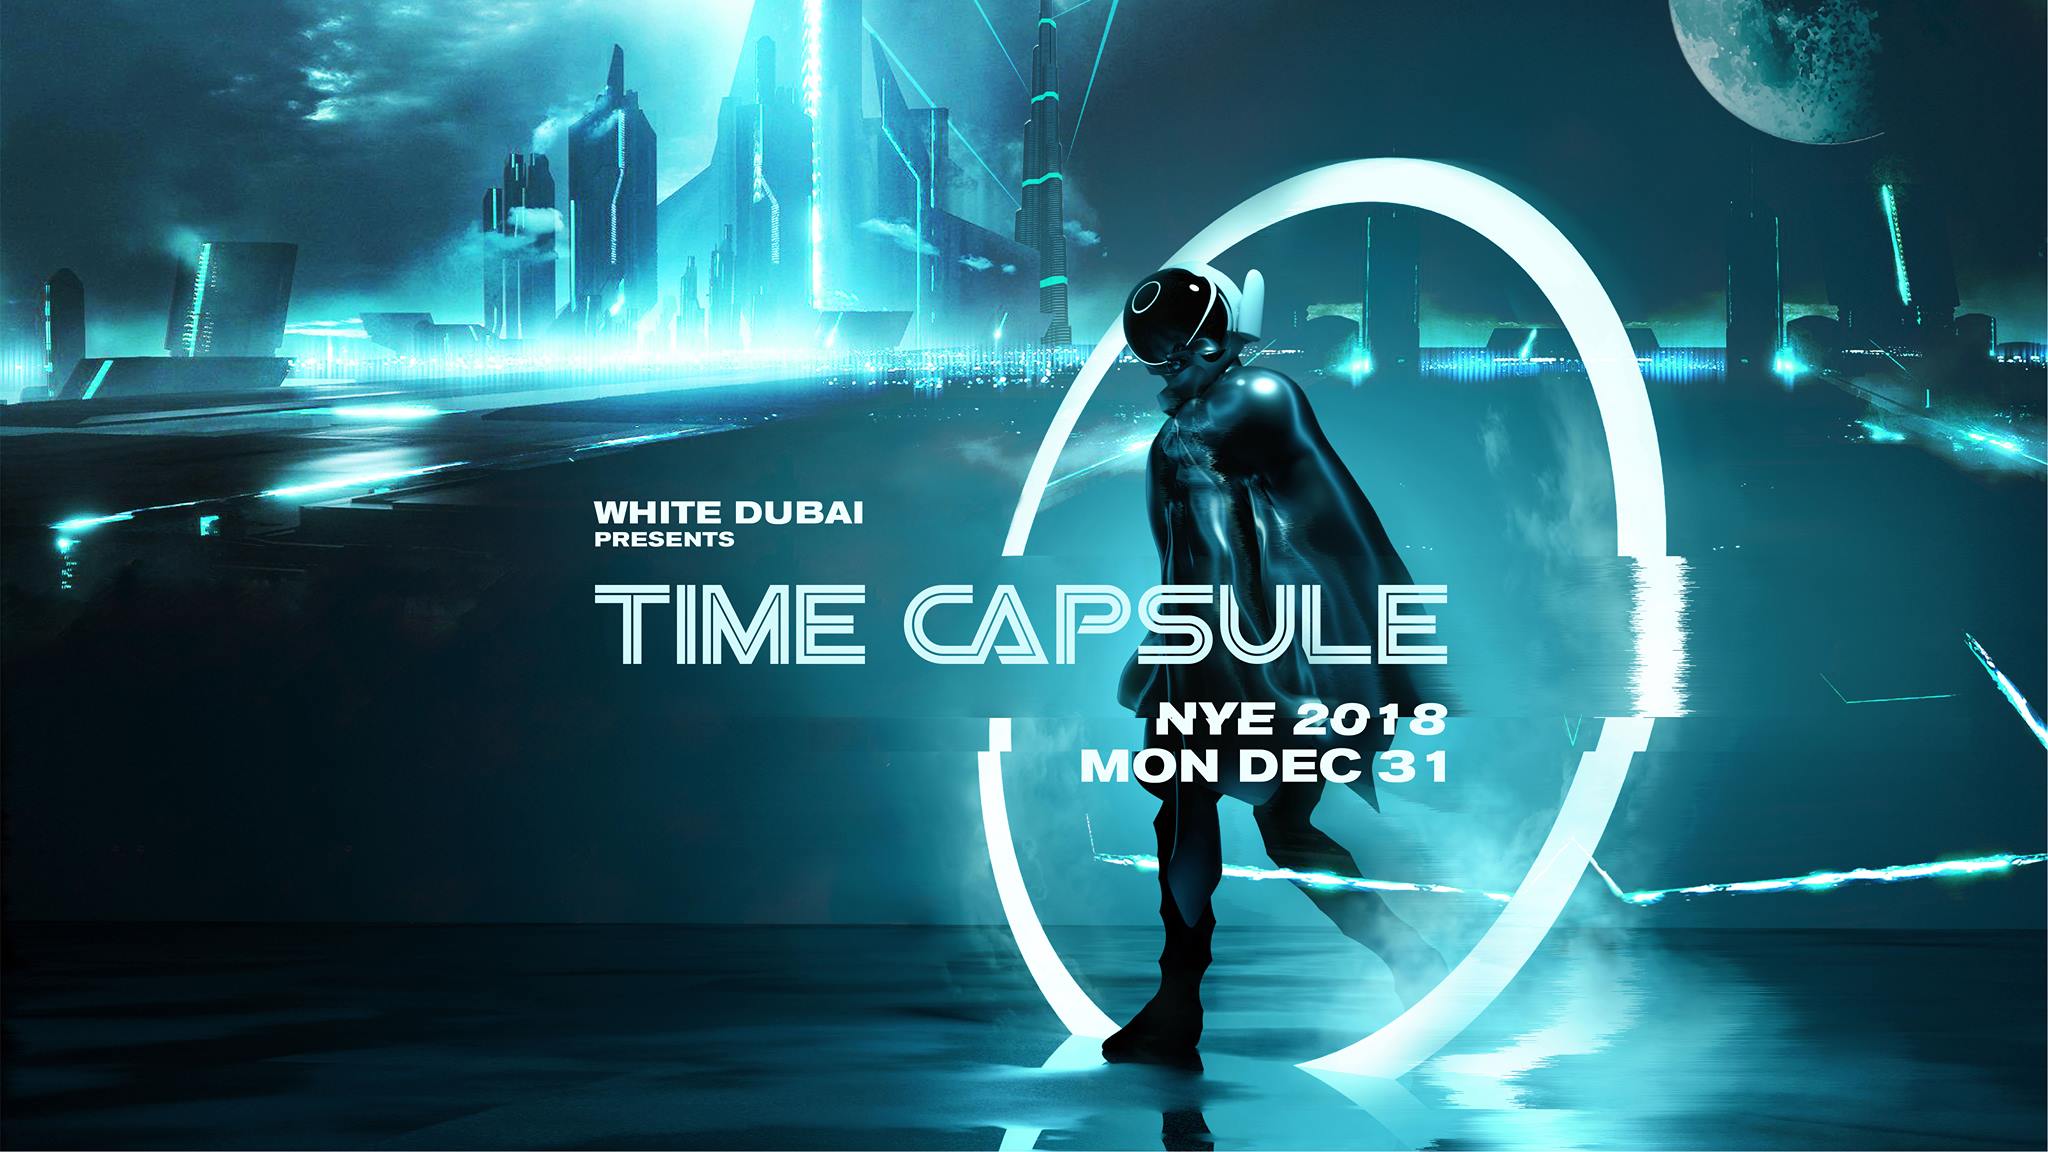 WHITE Dubai Presents: Time Capsule – NYE 2018 - Coming Soon in UAE